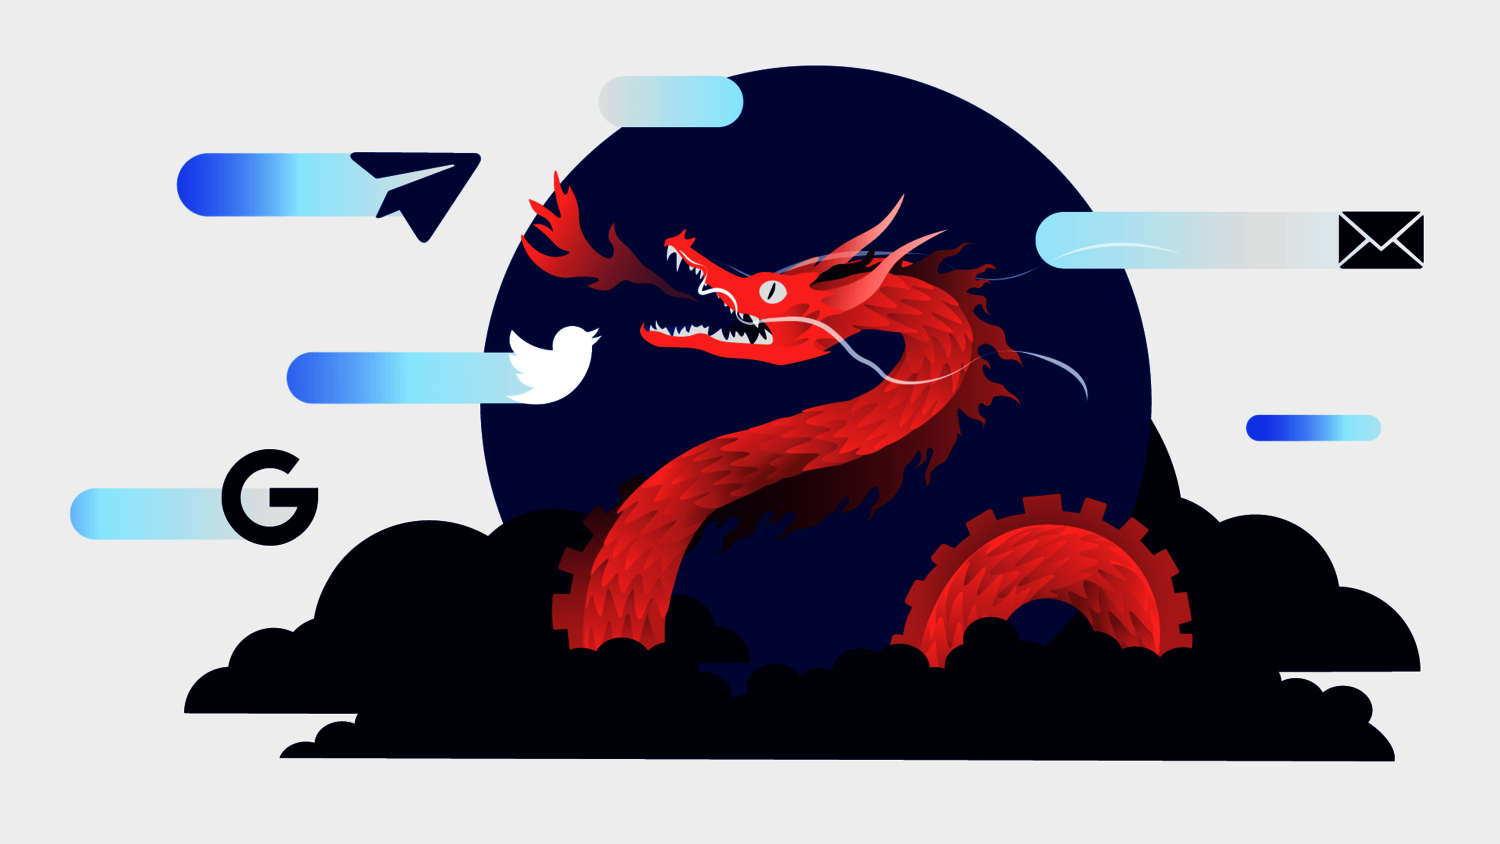 Grafik zeigt einen chinesischen Drachen, umgeben von Mail- und Messenger-Icons.